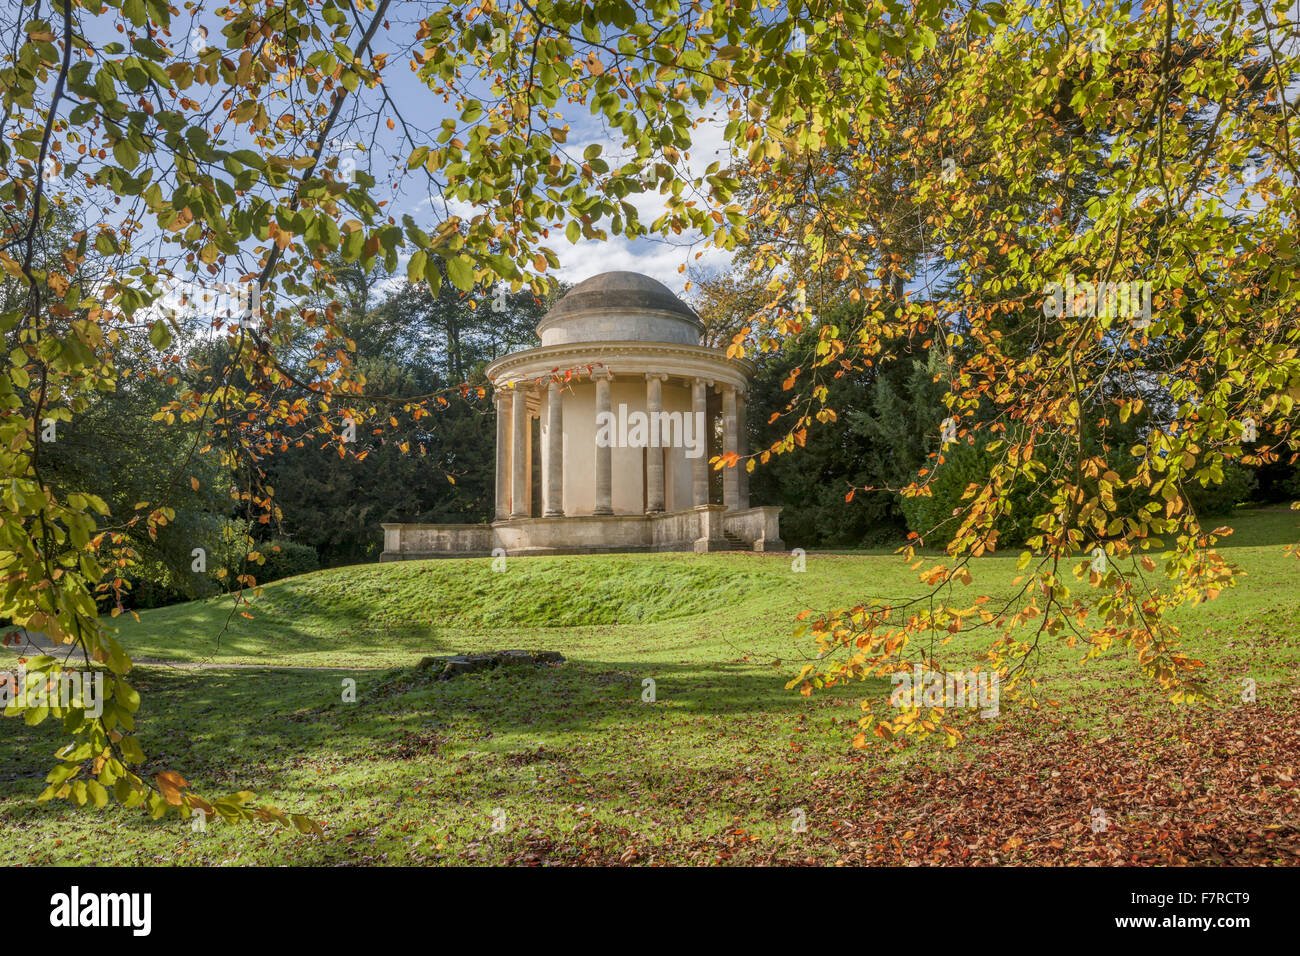 Le Temple de l'Antique vertu à Stowe, Buckinghamshire. Stowe est un jardin paysager du 18ème siècle, et comprend plus de 40 temples et monuments historiques. Banque D'Images